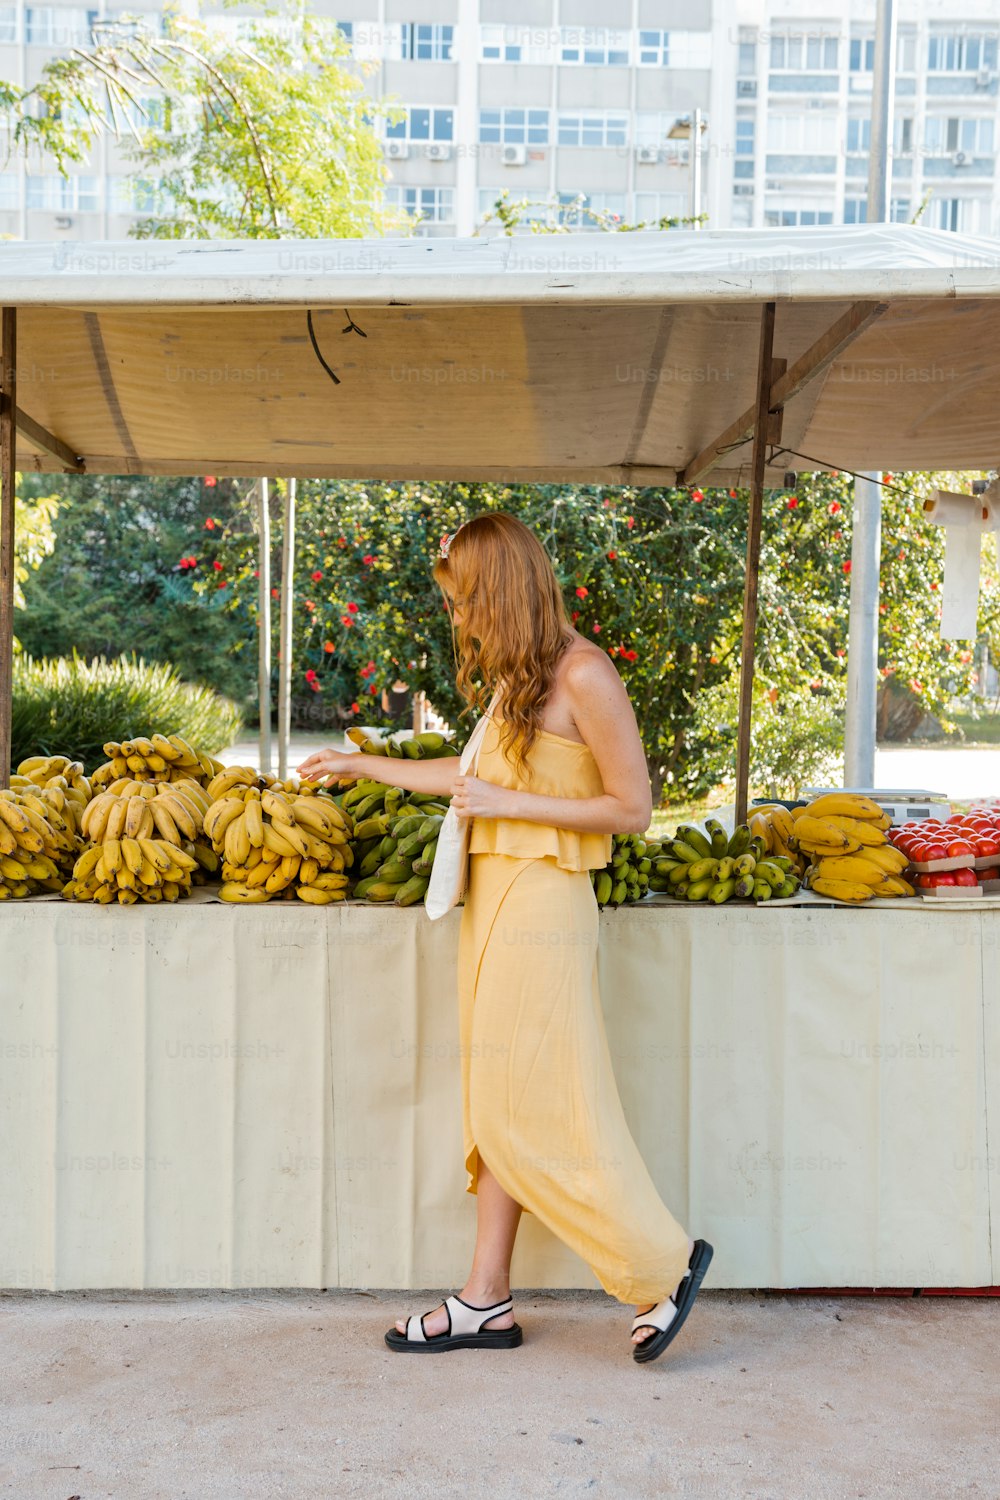 과일 가판대 앞에 서 있는 노란 드레스를 입은 여자